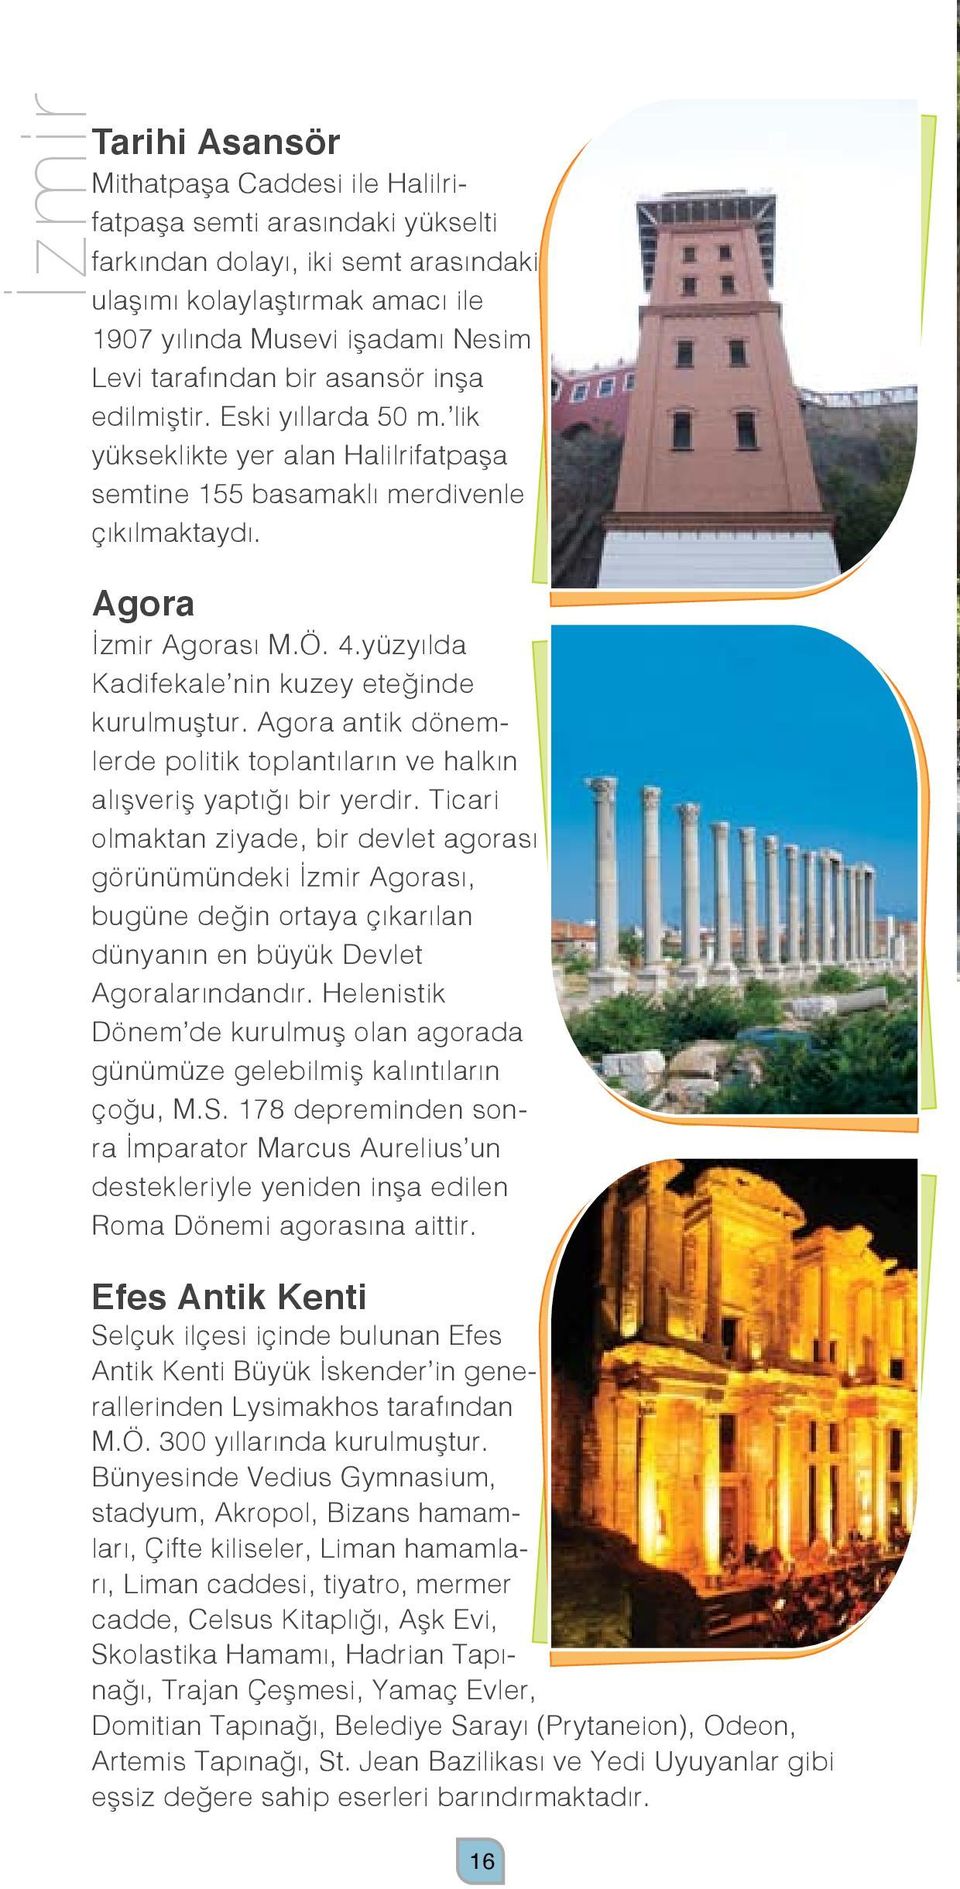 yüzyılda Kadifekale nin kuzey eteğinde kurulmuştur. Agora antik dönemlerde politik toplantıların ve halkın alışveriş yaptığı bir yerdir.